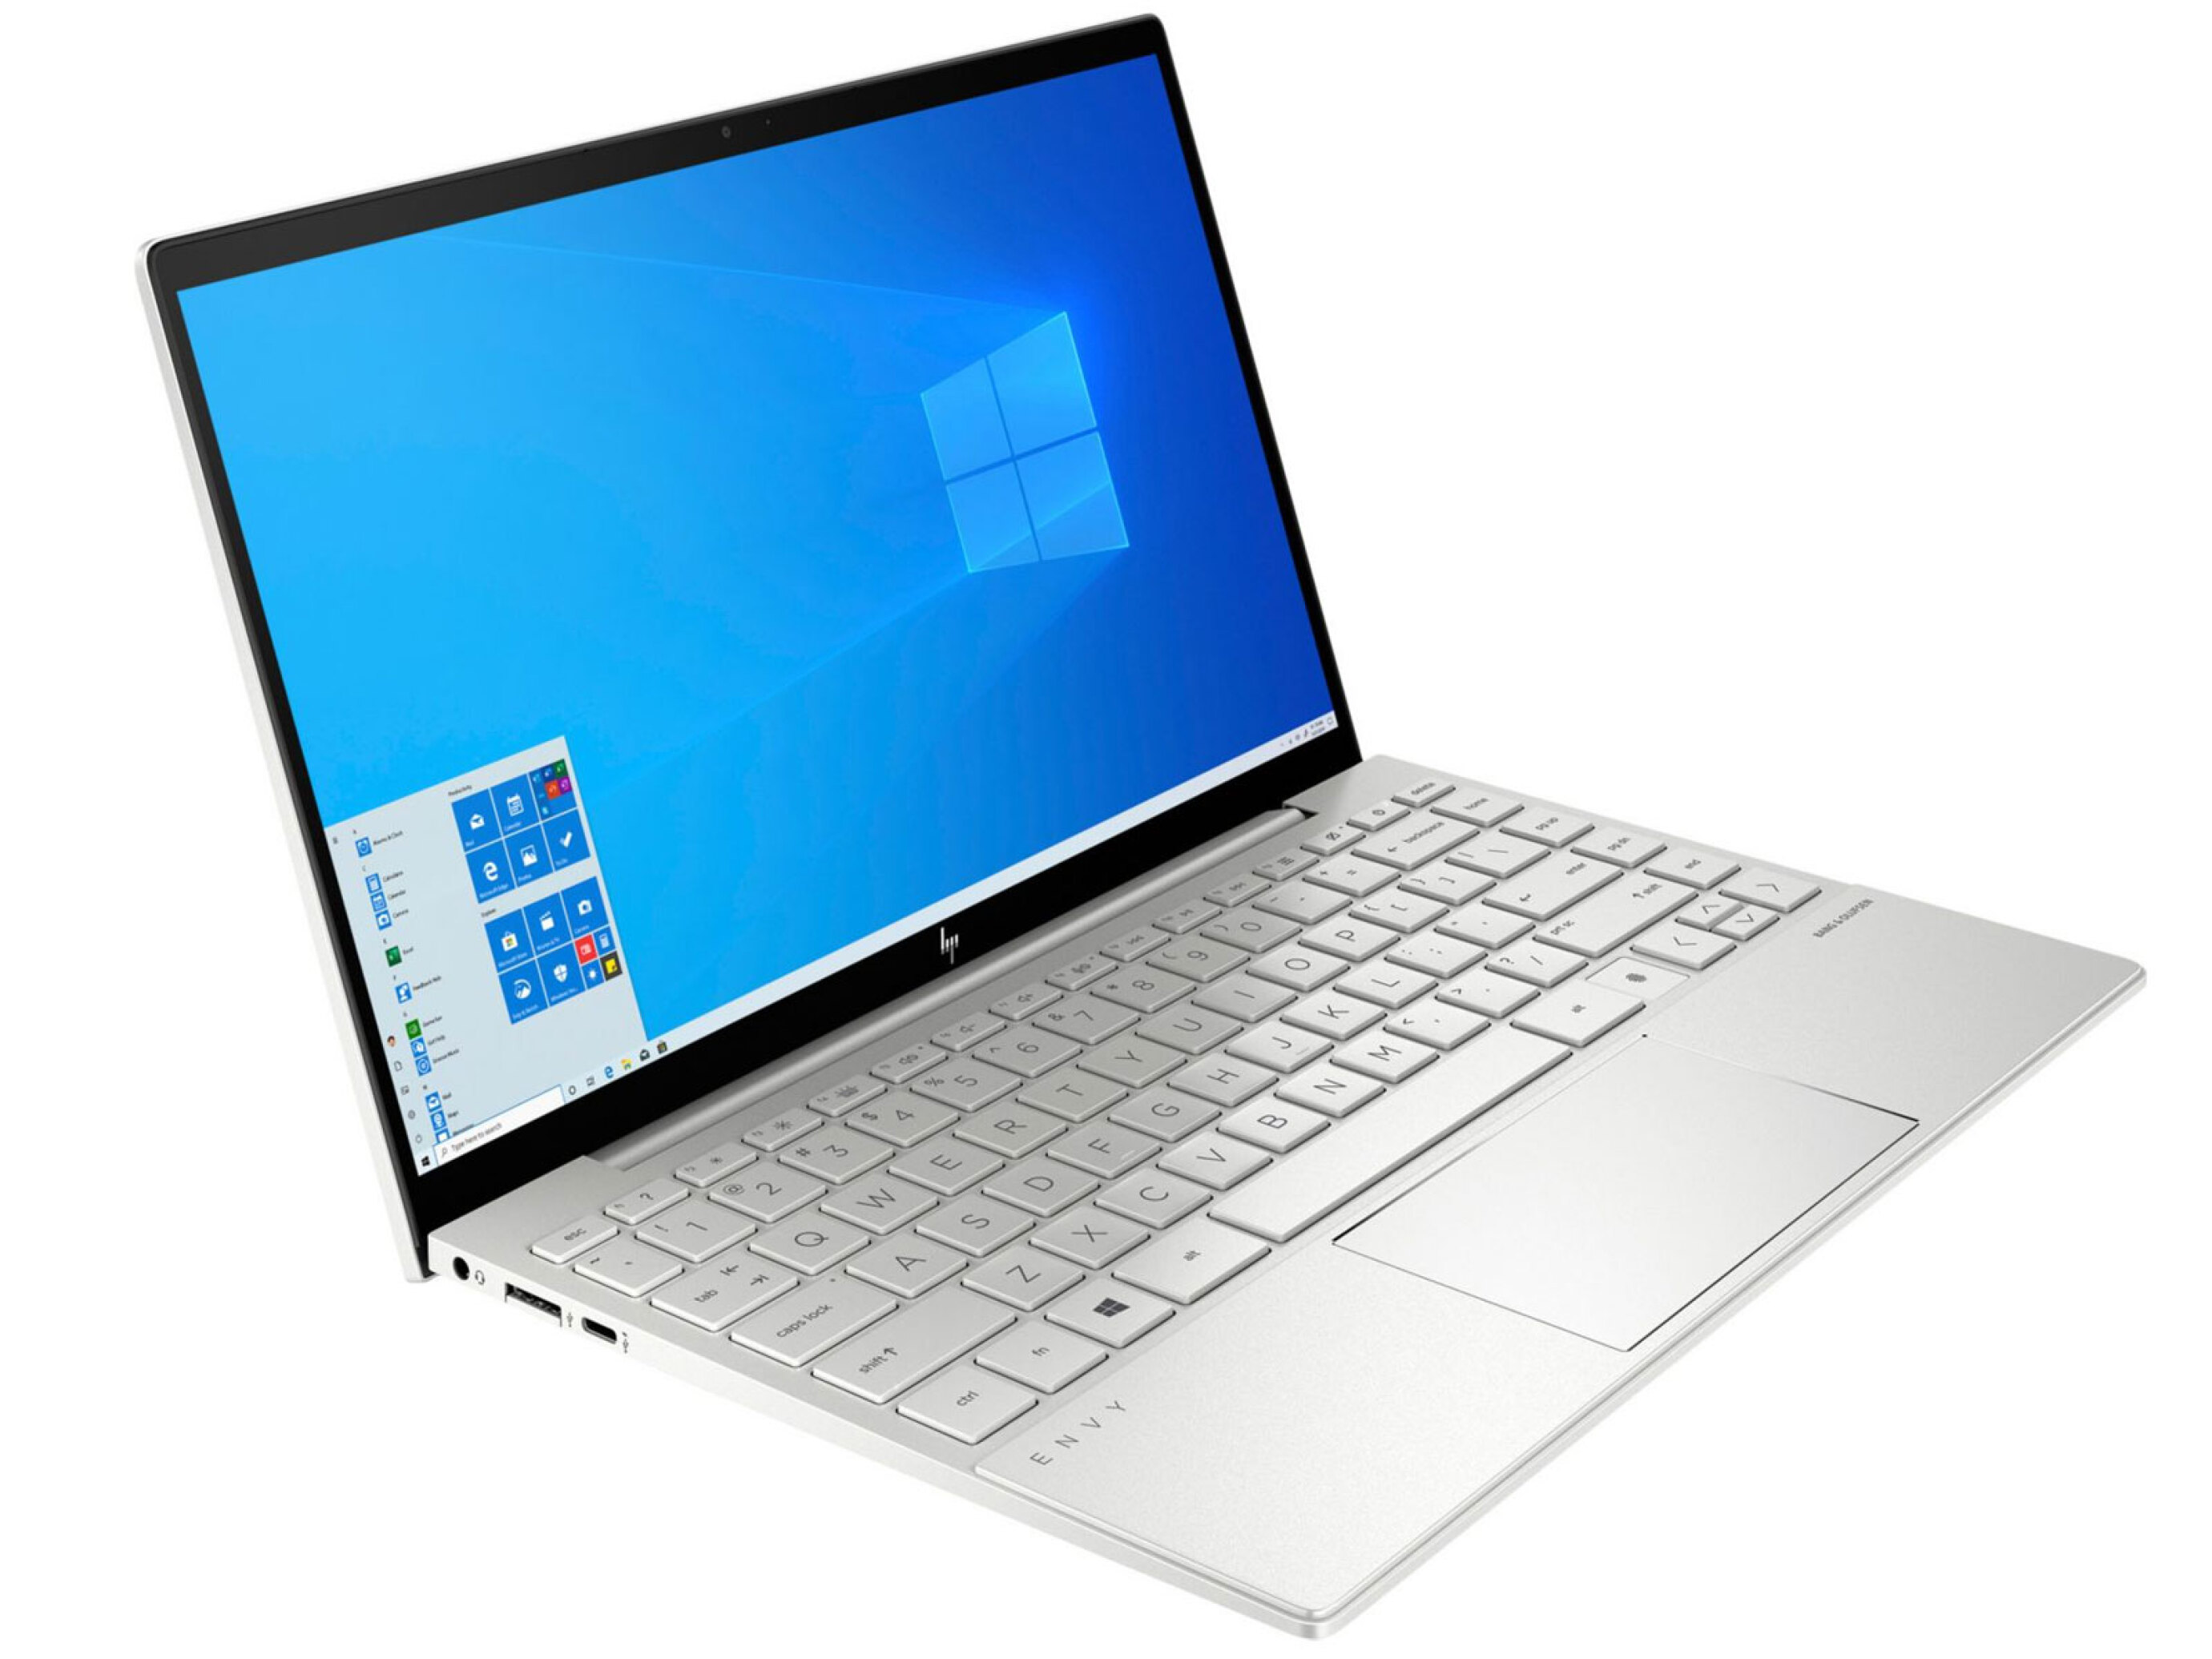  لپ تاپ اچ پی Envy 13 Core i7 1065G7 | لاکچری لپ تاپ 